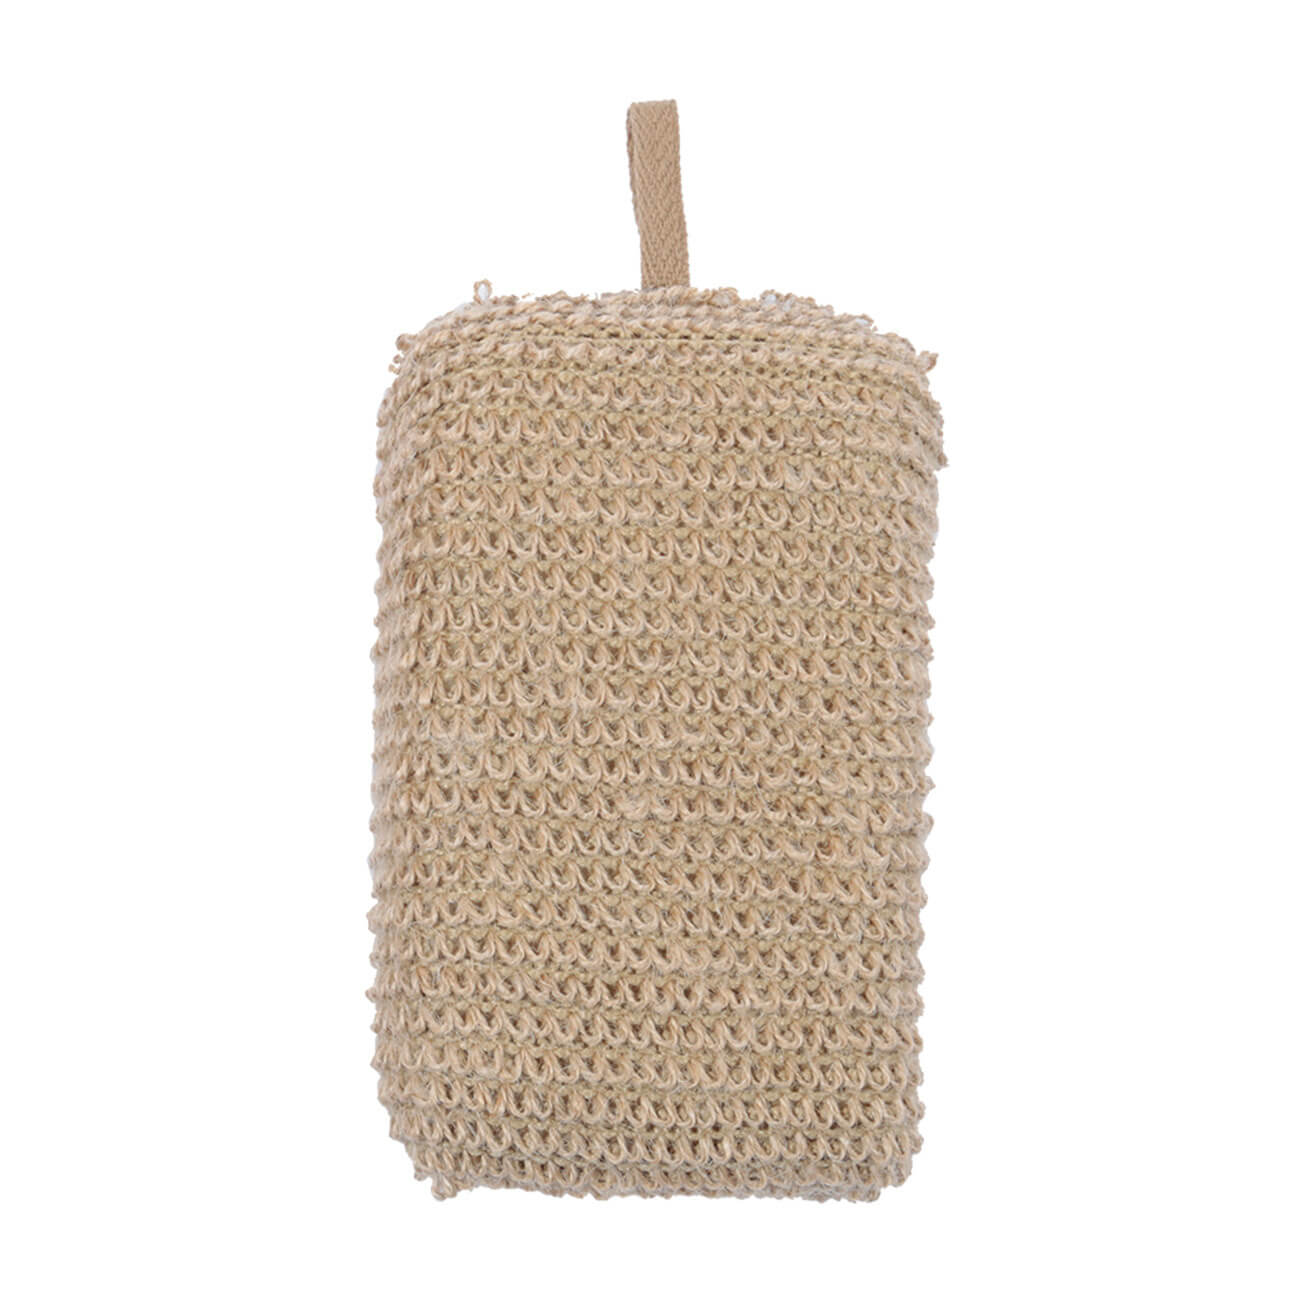 Мочалка-губка для мытья тела, 9х14 см, конопляное волокно/полиуретан, бежевая, Eco life мочалка для мытья тела 12х17 см с держателем бамбук хлопок серо бежевая bamboo spa